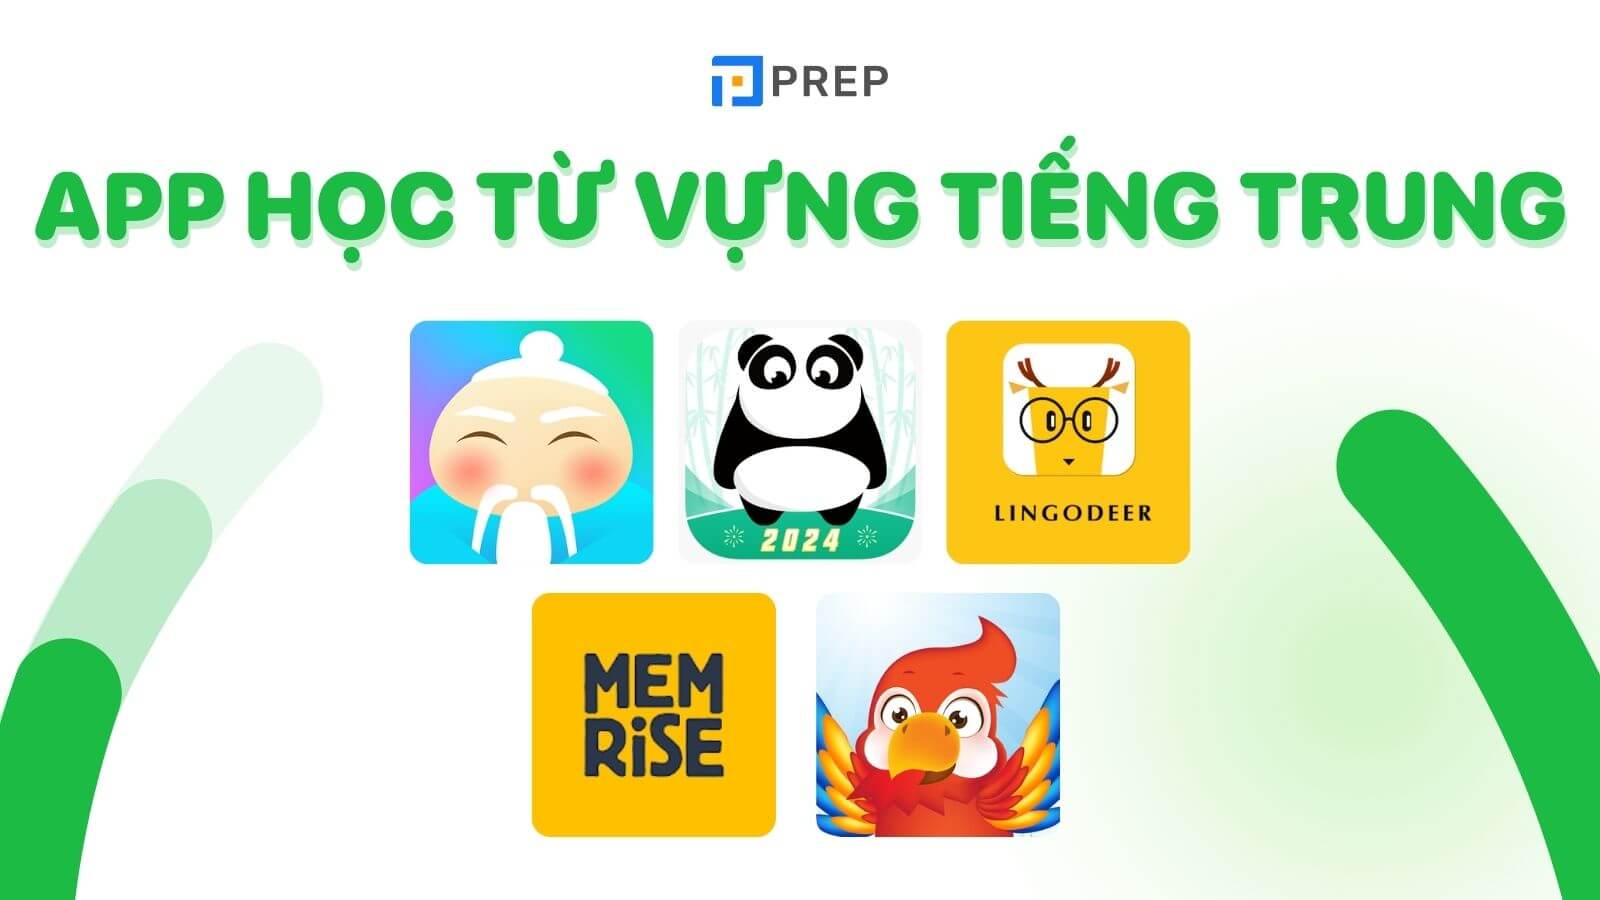 App Học Từ Vựng Tiếng Trung: Top 10 Ứng Dụng Hiệu Quả Nhất